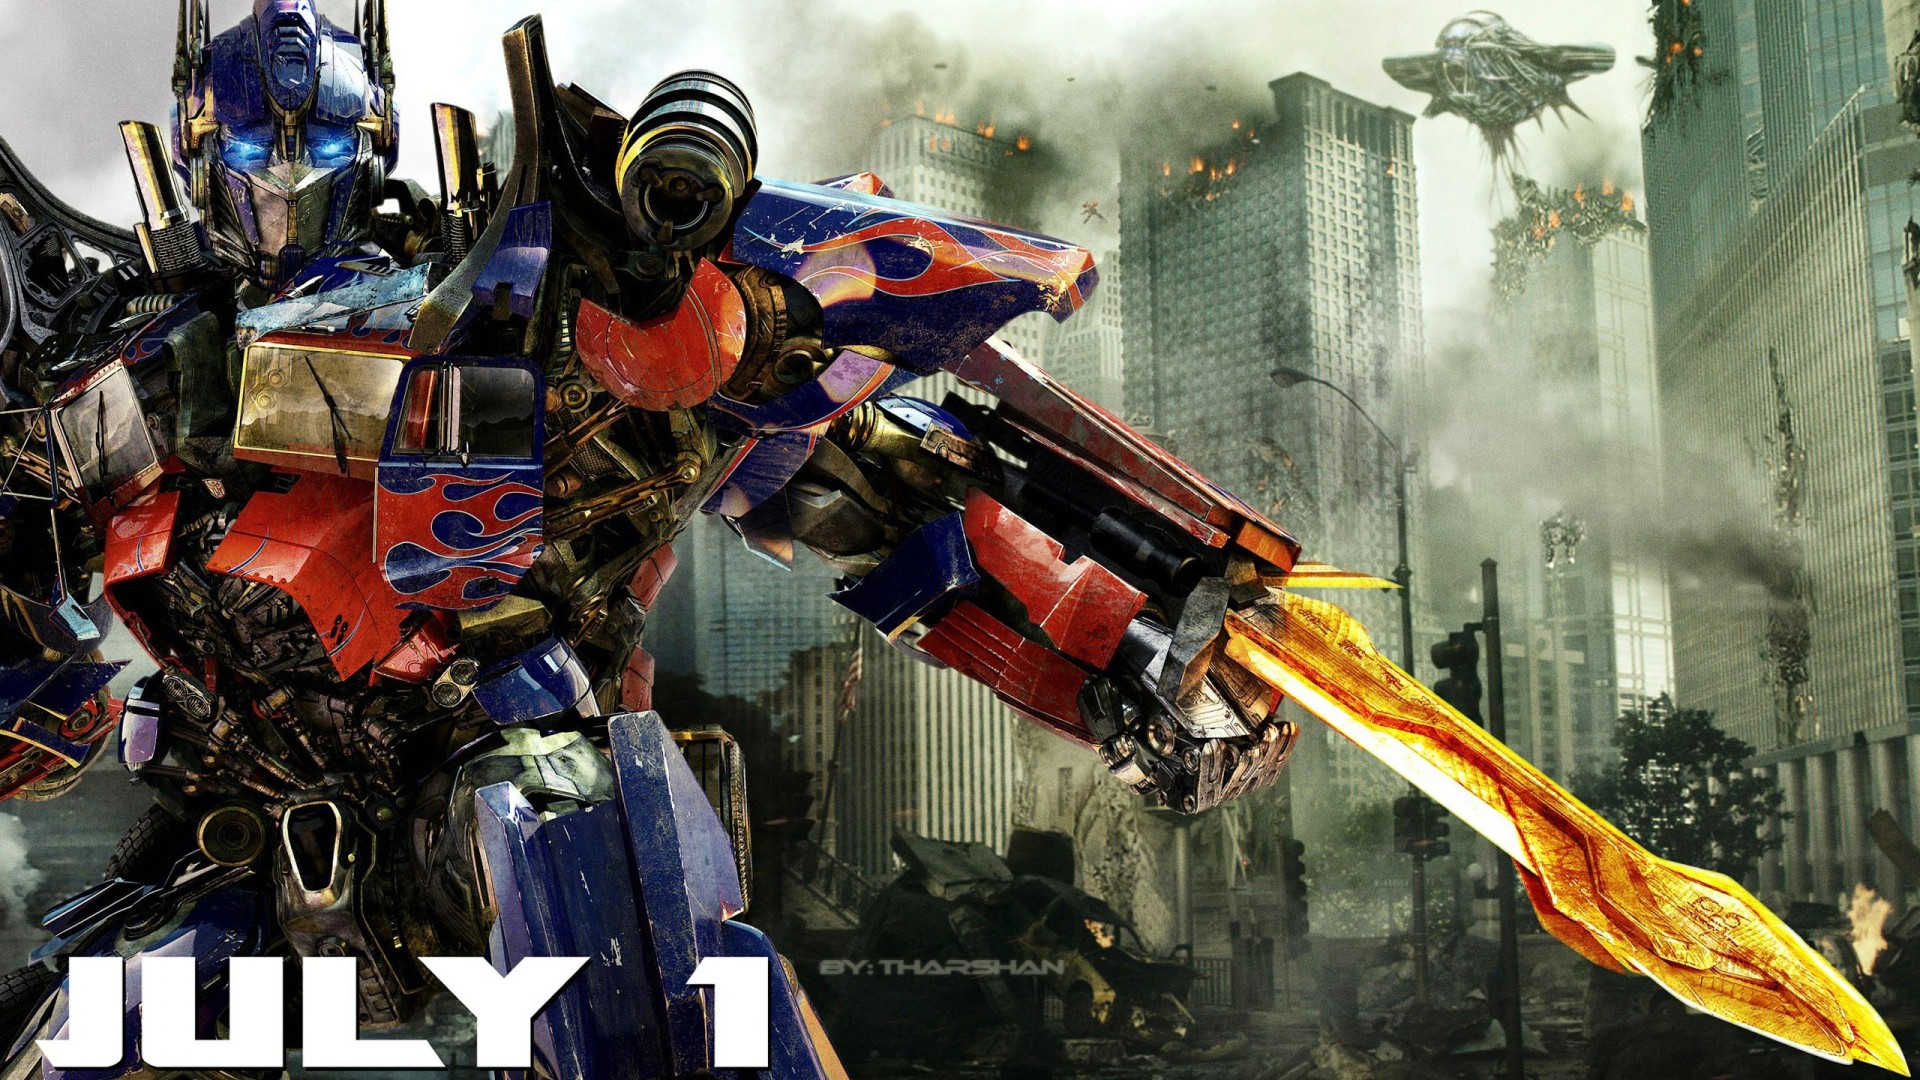 Wallpaper HD Transformers Optimus Prime